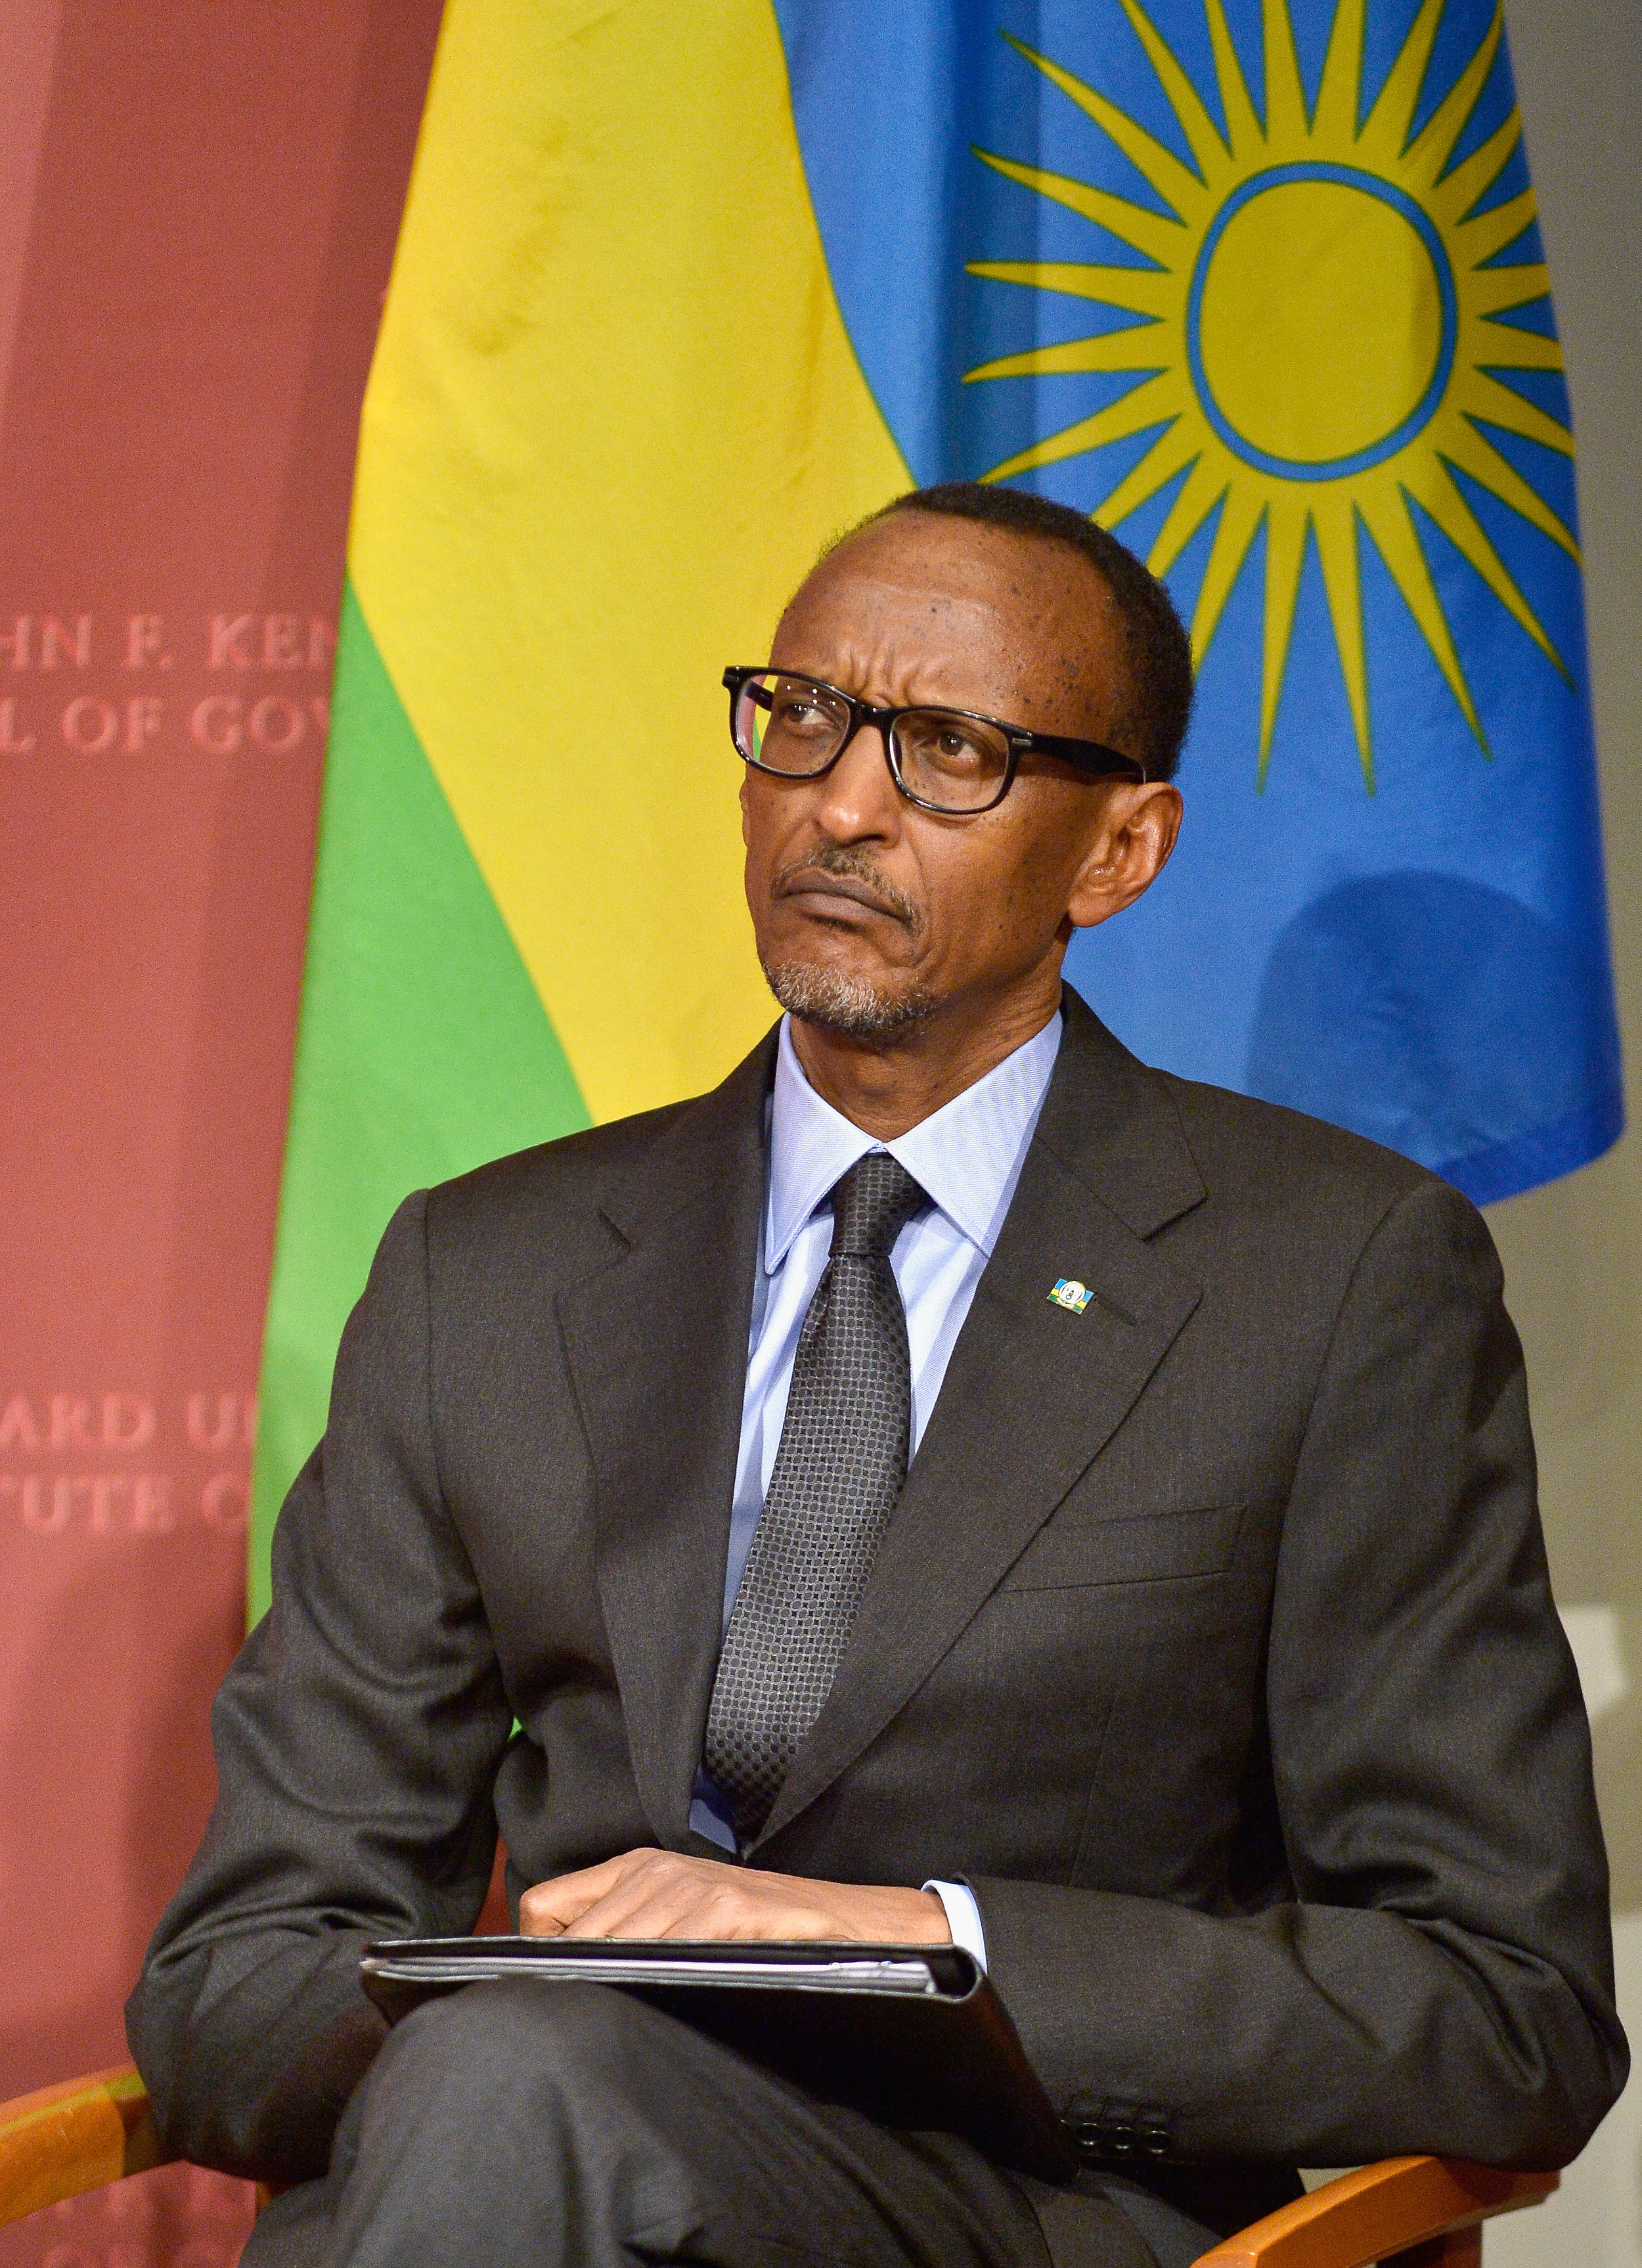 Rwandan President Paul Kagame at Harvard